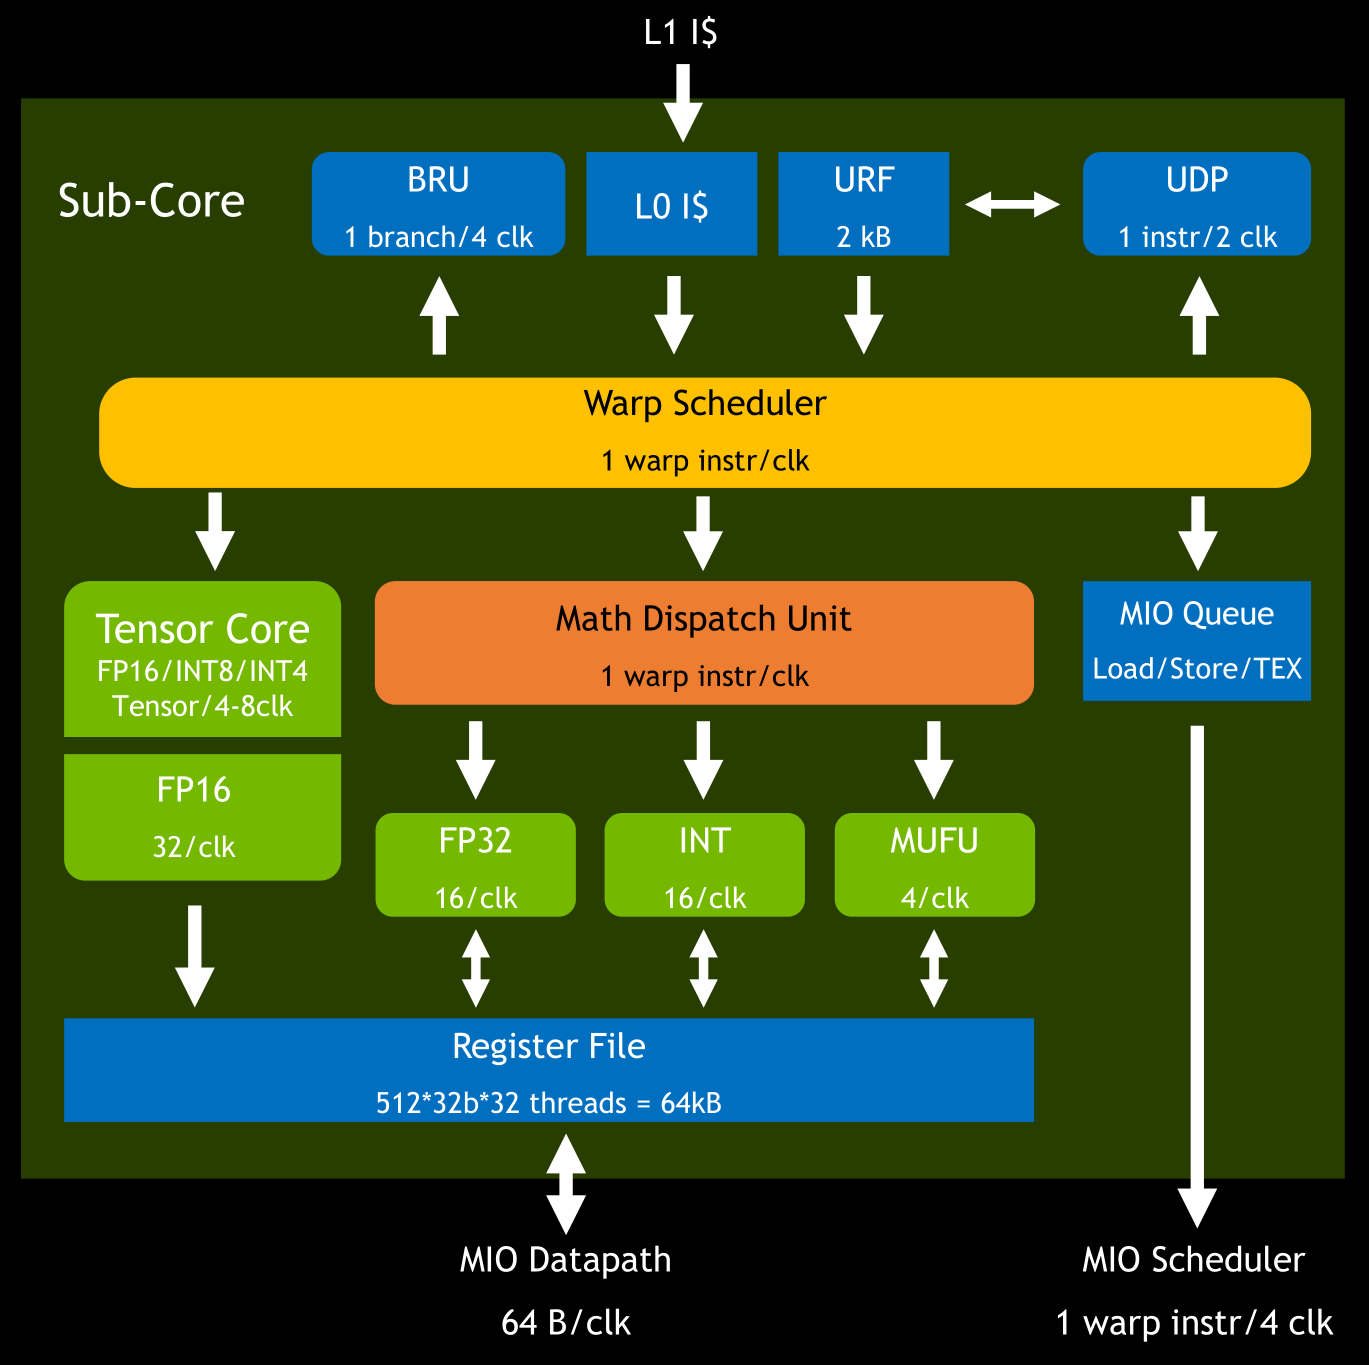 图 5 Turing 架构 Sub-Core 里的指令流程